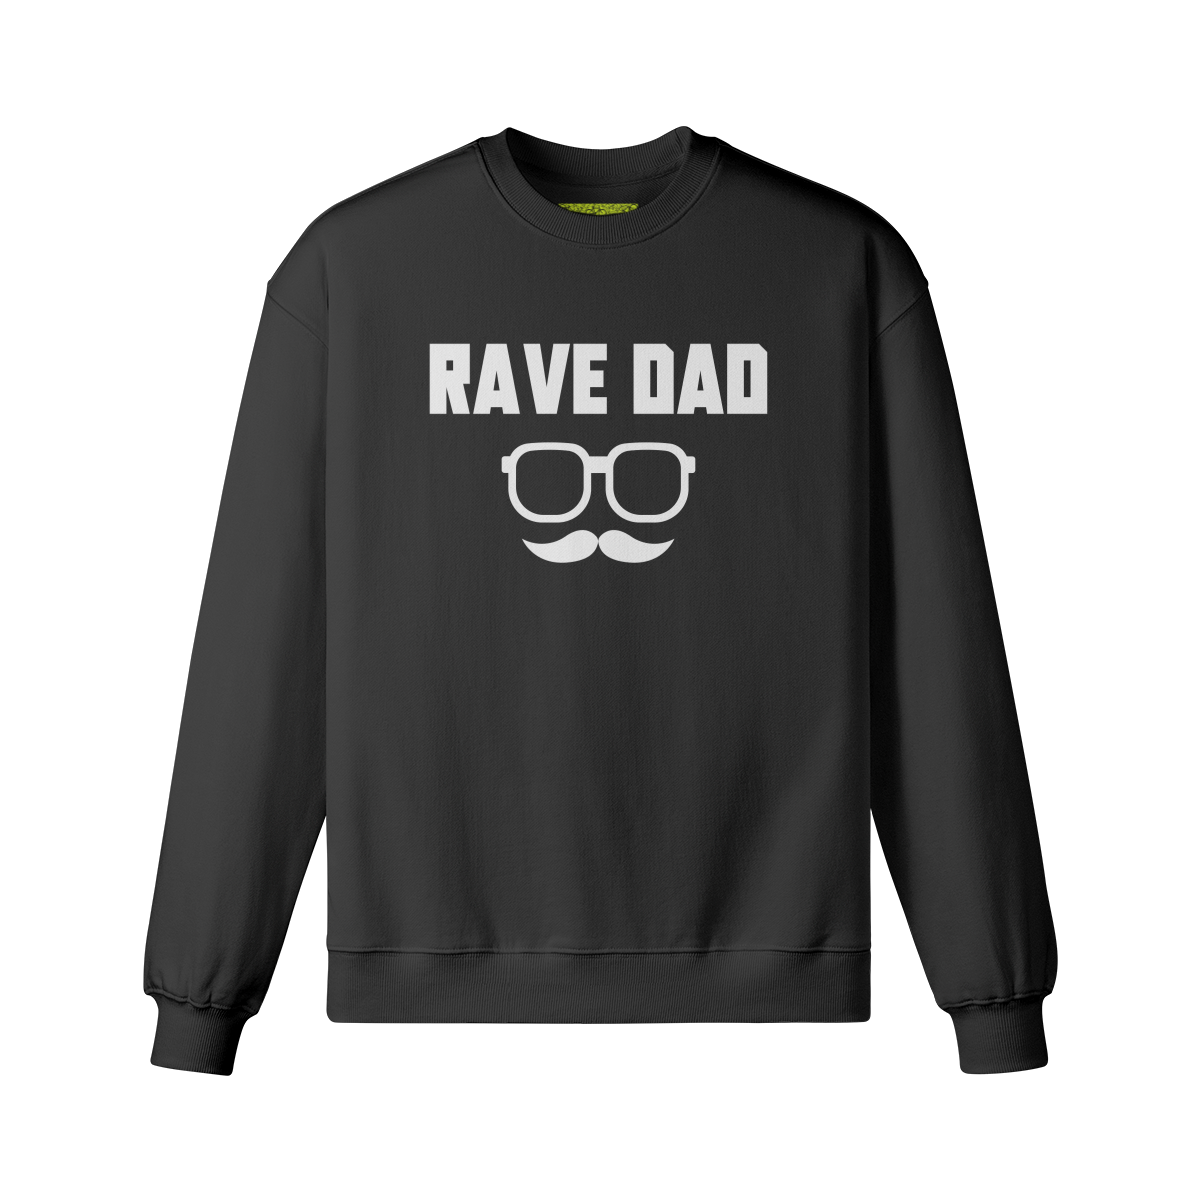 RAVE DAD - Unisex Oversized Sweatshirt